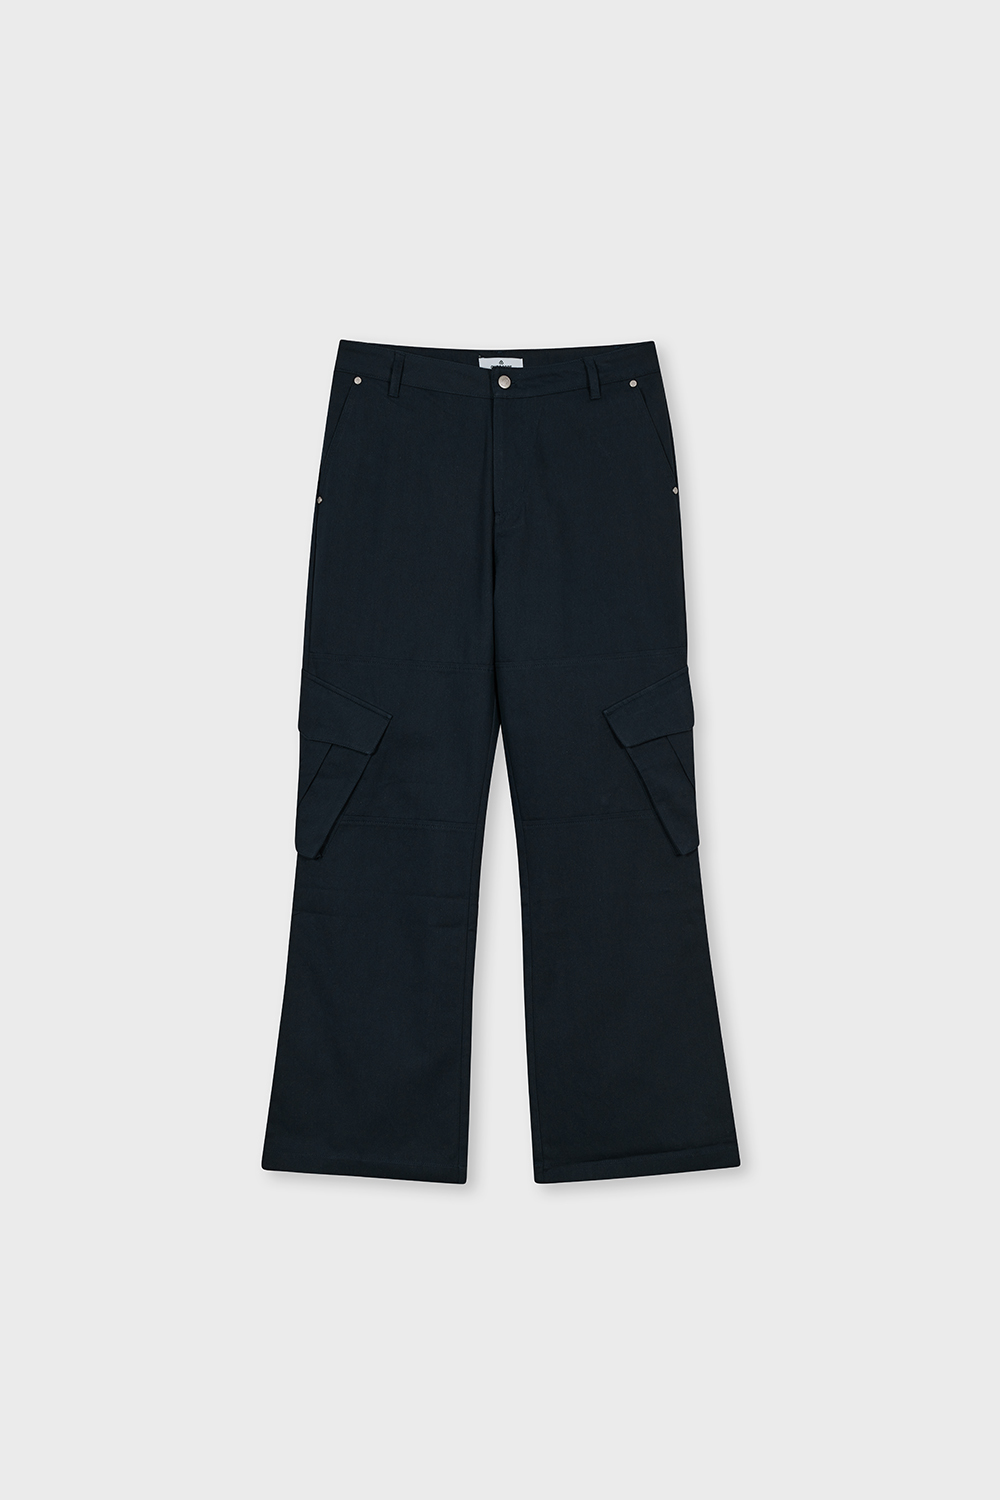 VELO Line Cargo Pants (Navy)